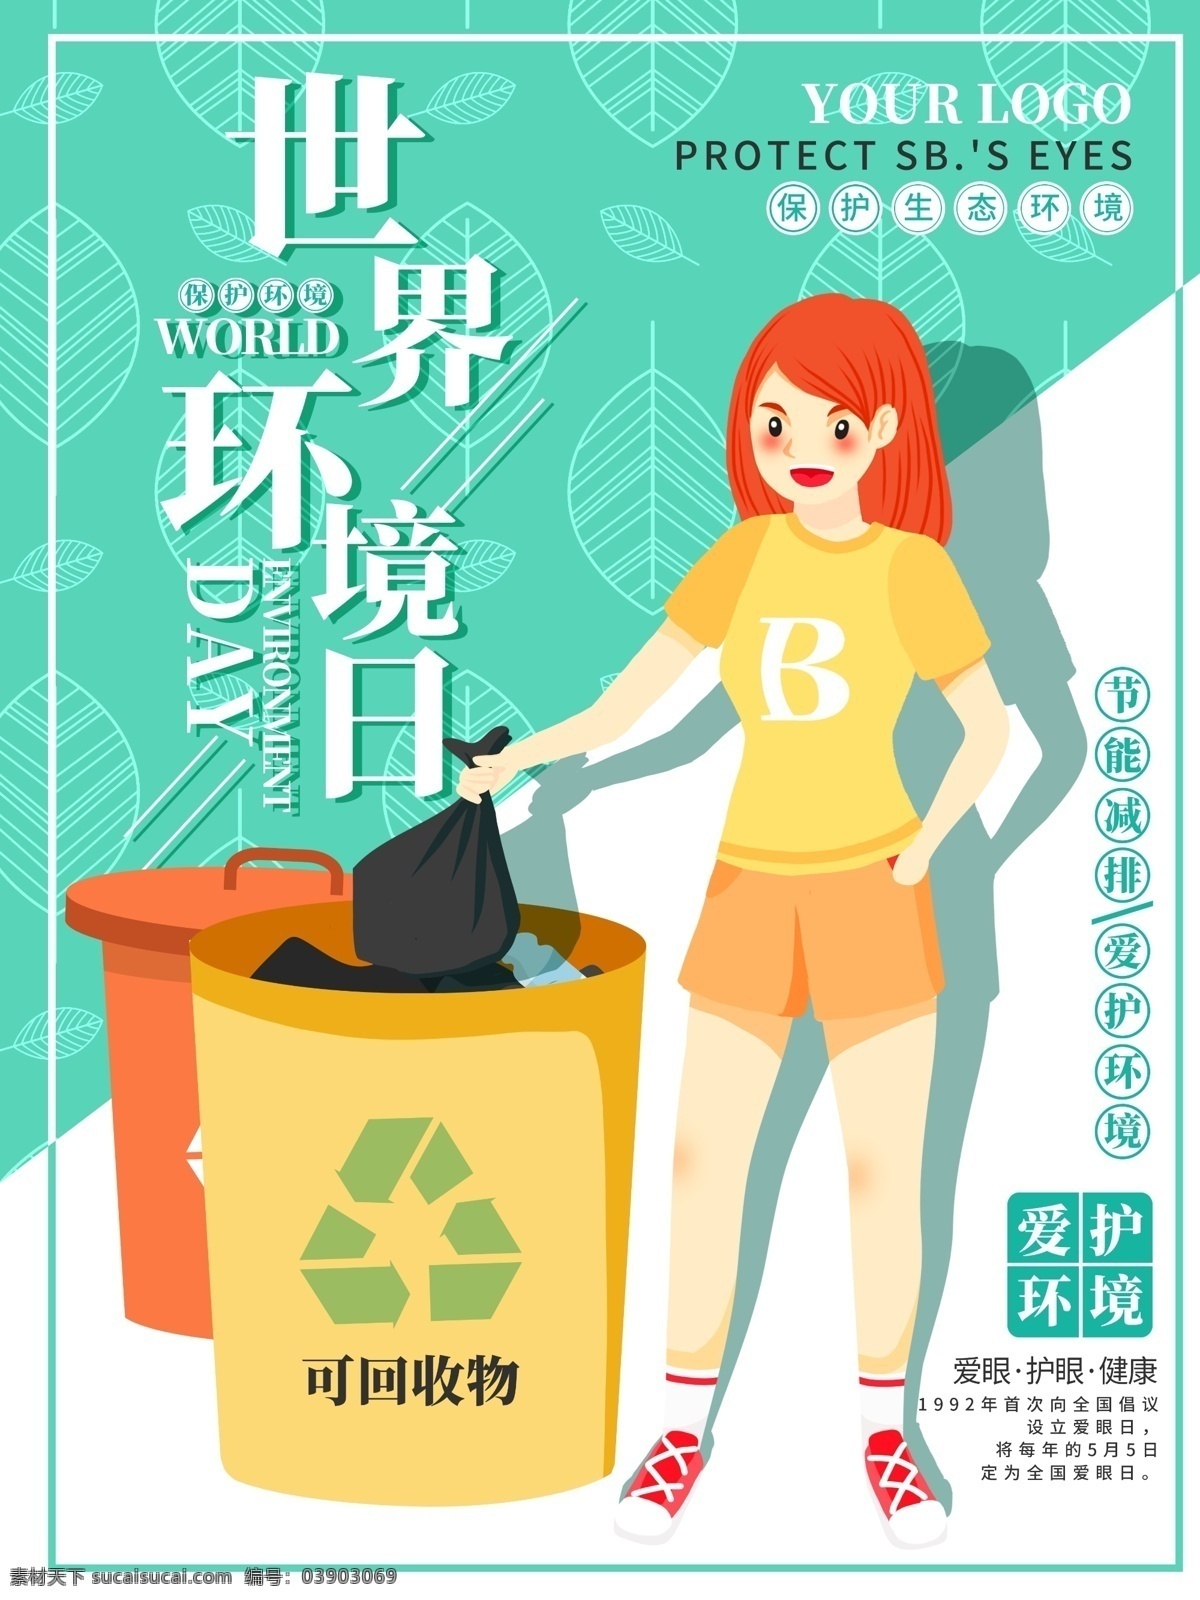 原创 卡通 世界环境日 插画 海报 环境保护海报 环保插画海报 环境保护 环保 环境日 可回收垃圾 垃圾分类 爱护环境